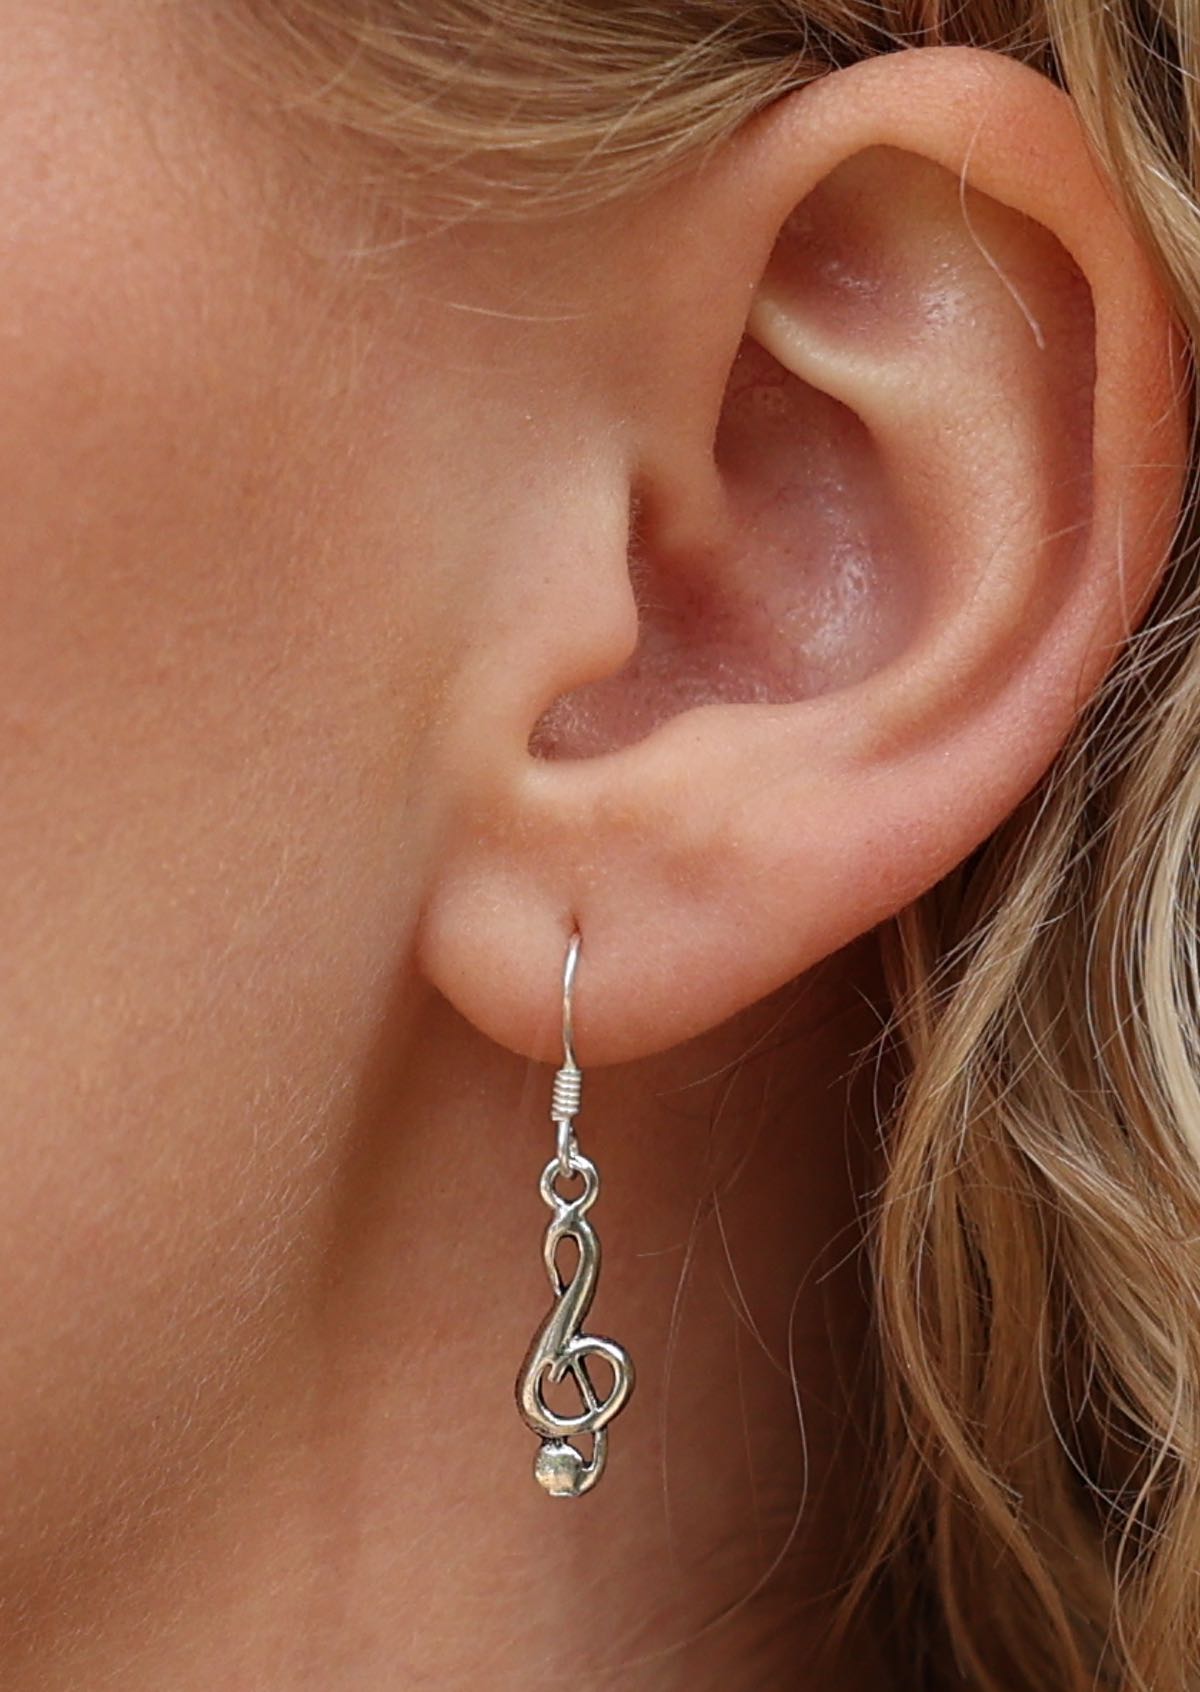 Treble clef sterling silver hook earrings